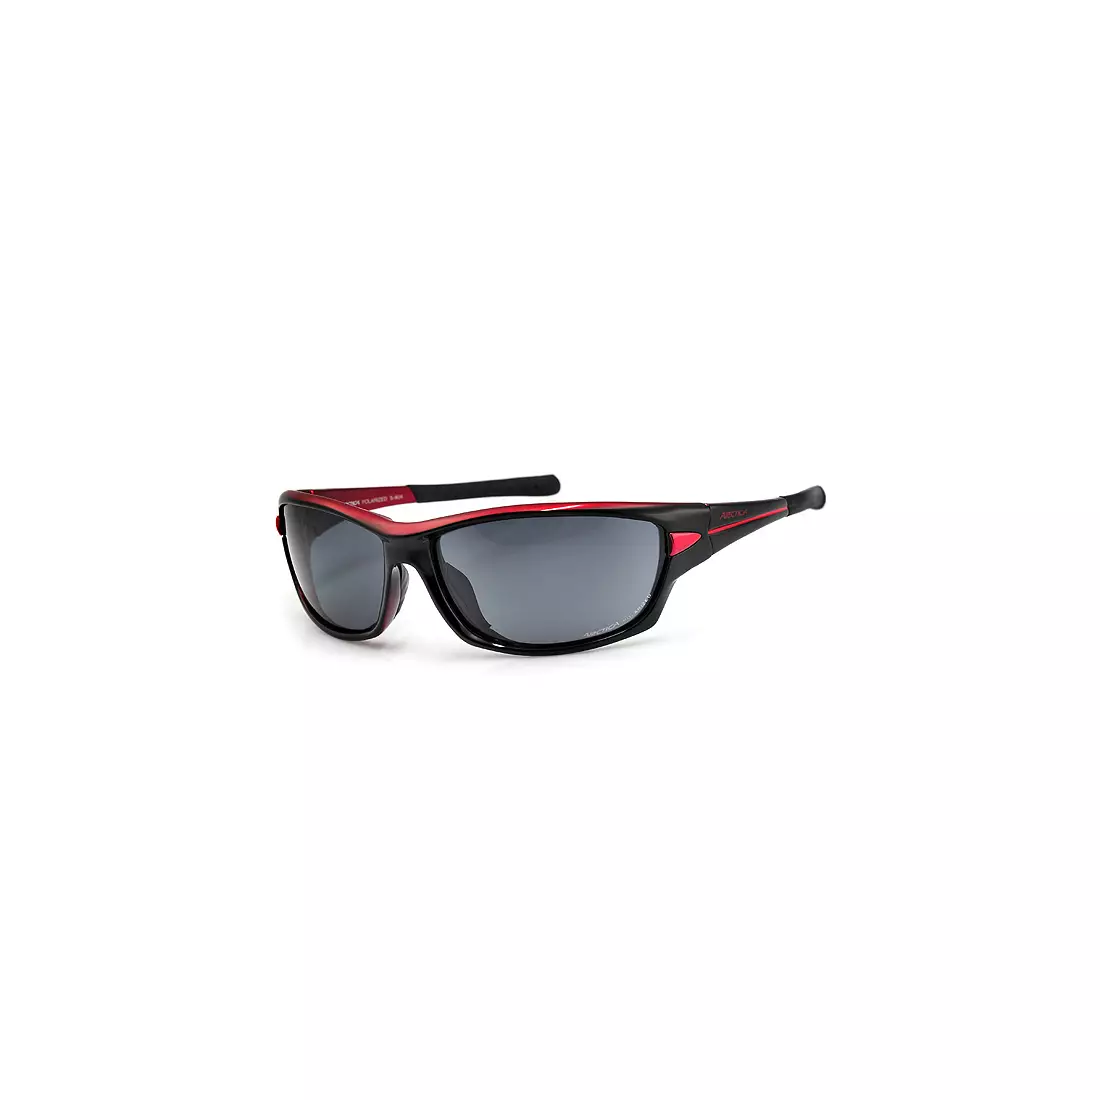 ARCTICA Sportbrille S-90A – Farbe: Schwarz und Rot